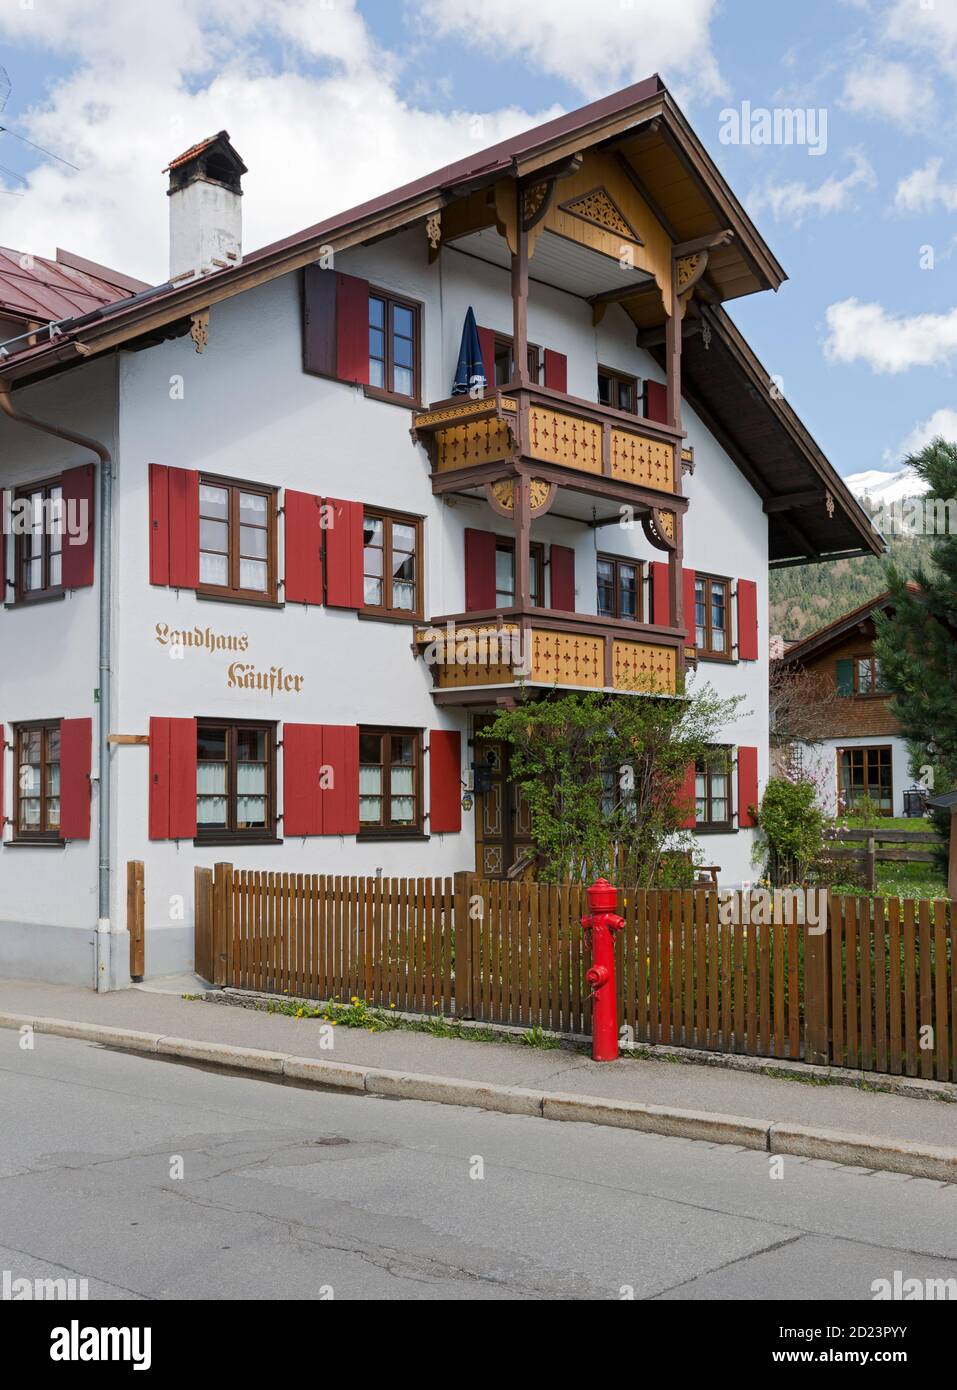 Oberstdorf, Wohnhaus, Landhaus, Bayern, Allemagne Banque D'Images